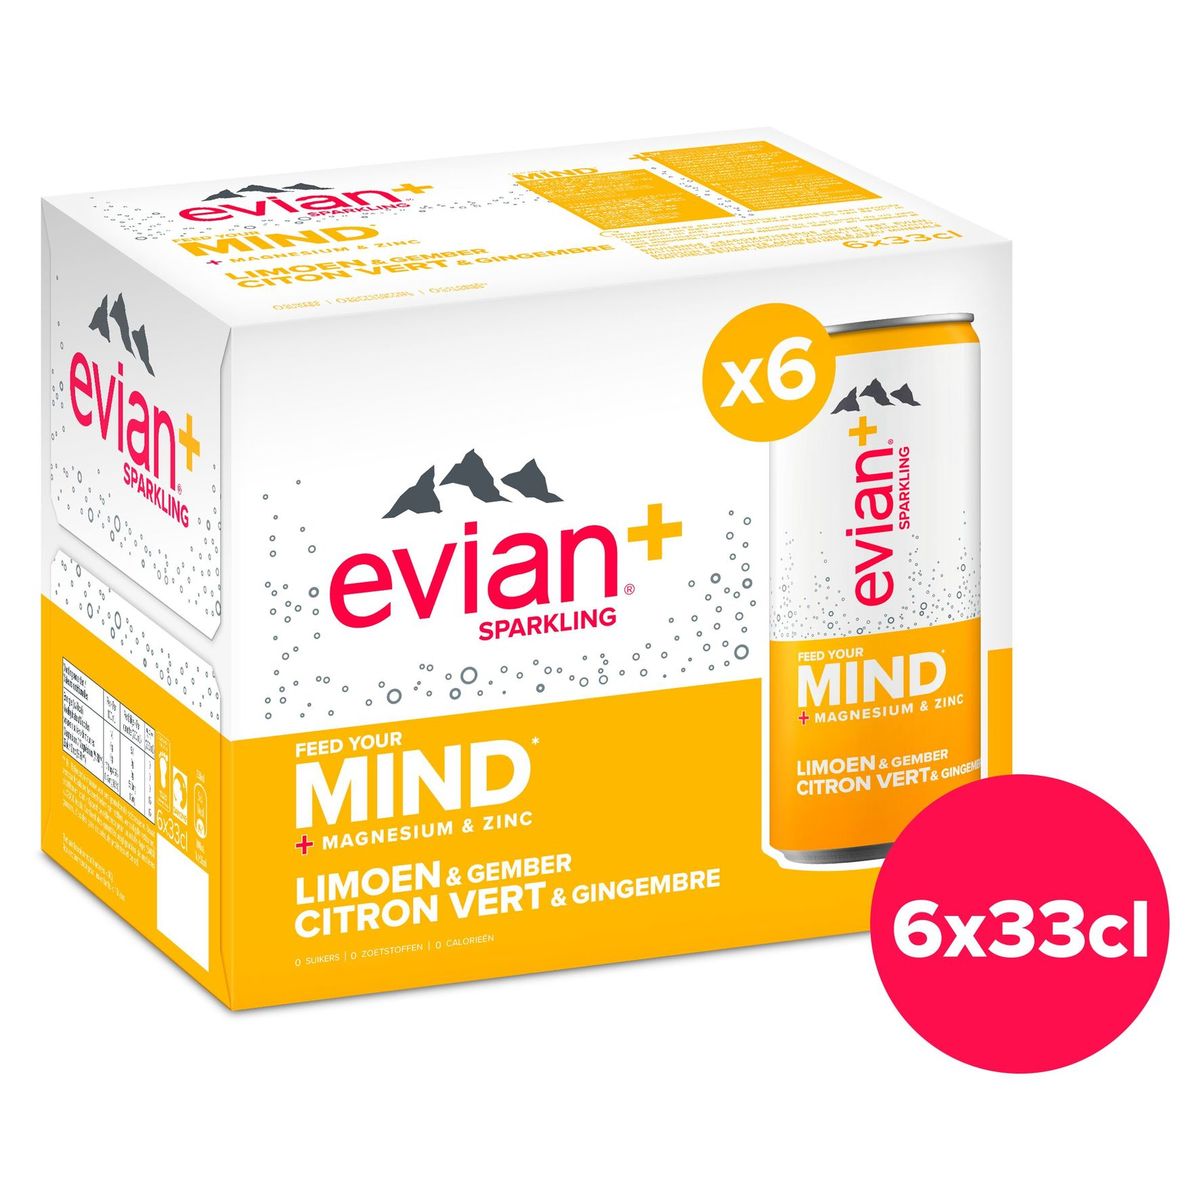 EVIAN+ Eau Minérale Pétillante Citron Vert Gingembre 6x33cl